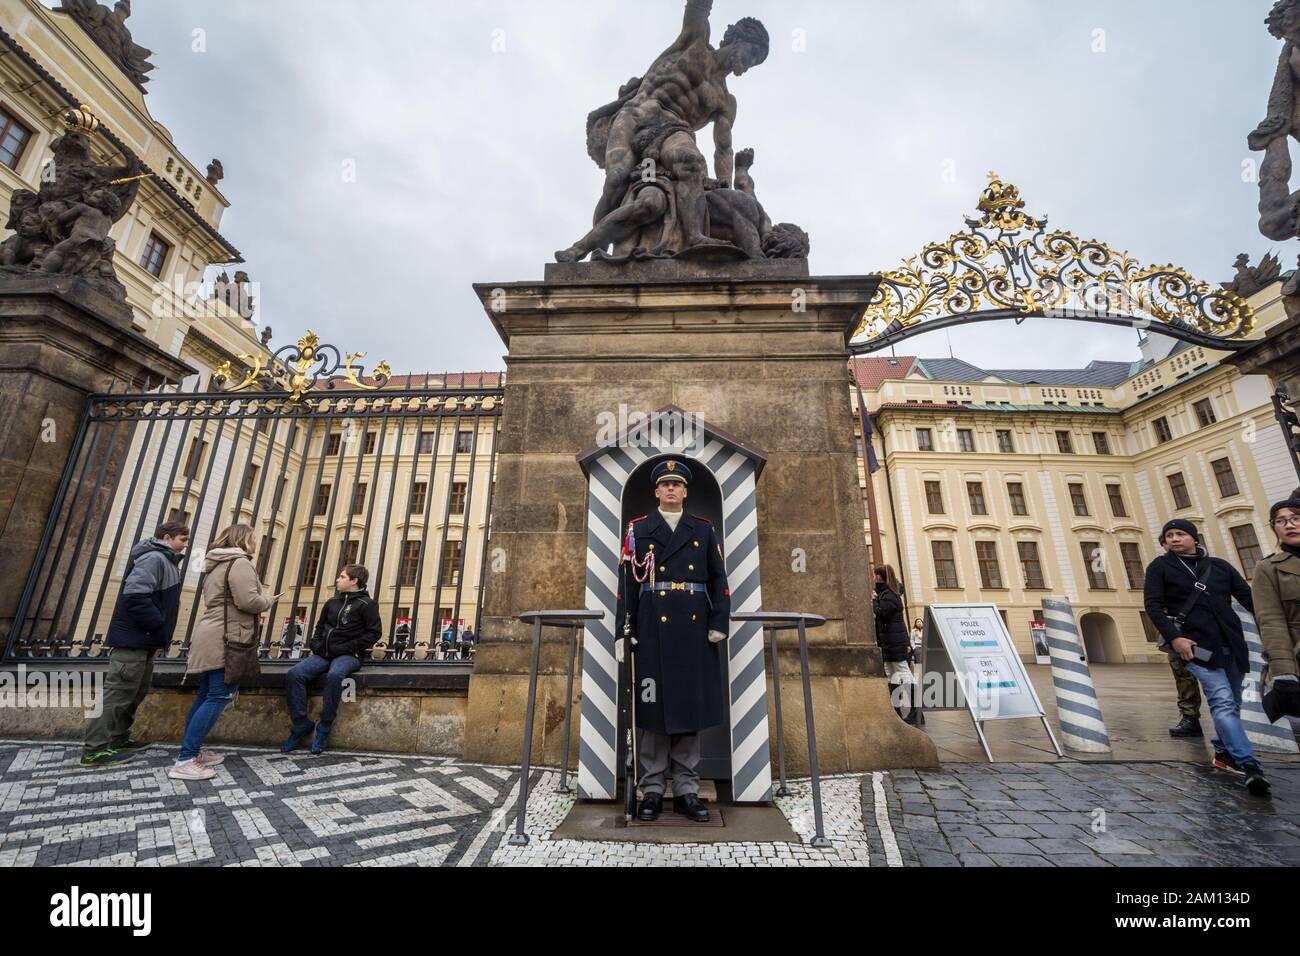 Praga, CECHIA - 2 NOVEMBRE 2019: Guardia del Castello di Praga, chiamata anche Hradni Straz, in uniforme con il suo fucile di fronte al Castello. Hradni S Foto Stock